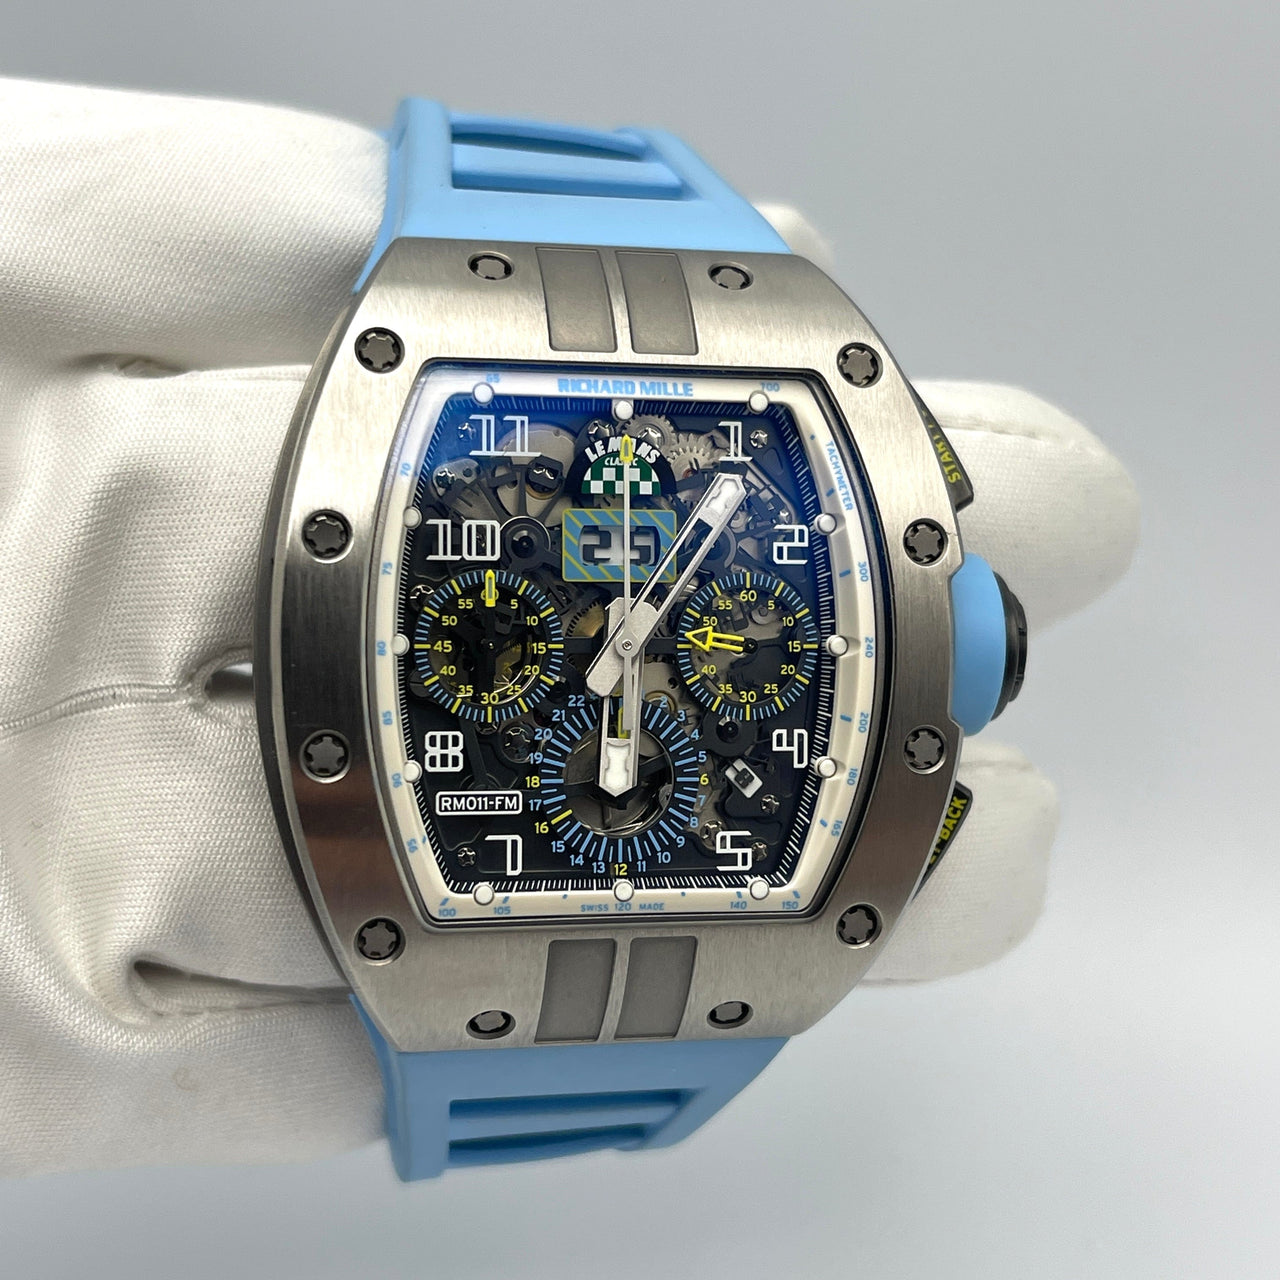 Luxury Watch Richard Mille Lemans Classic Titanium RM011-FM Wrist Aficionado